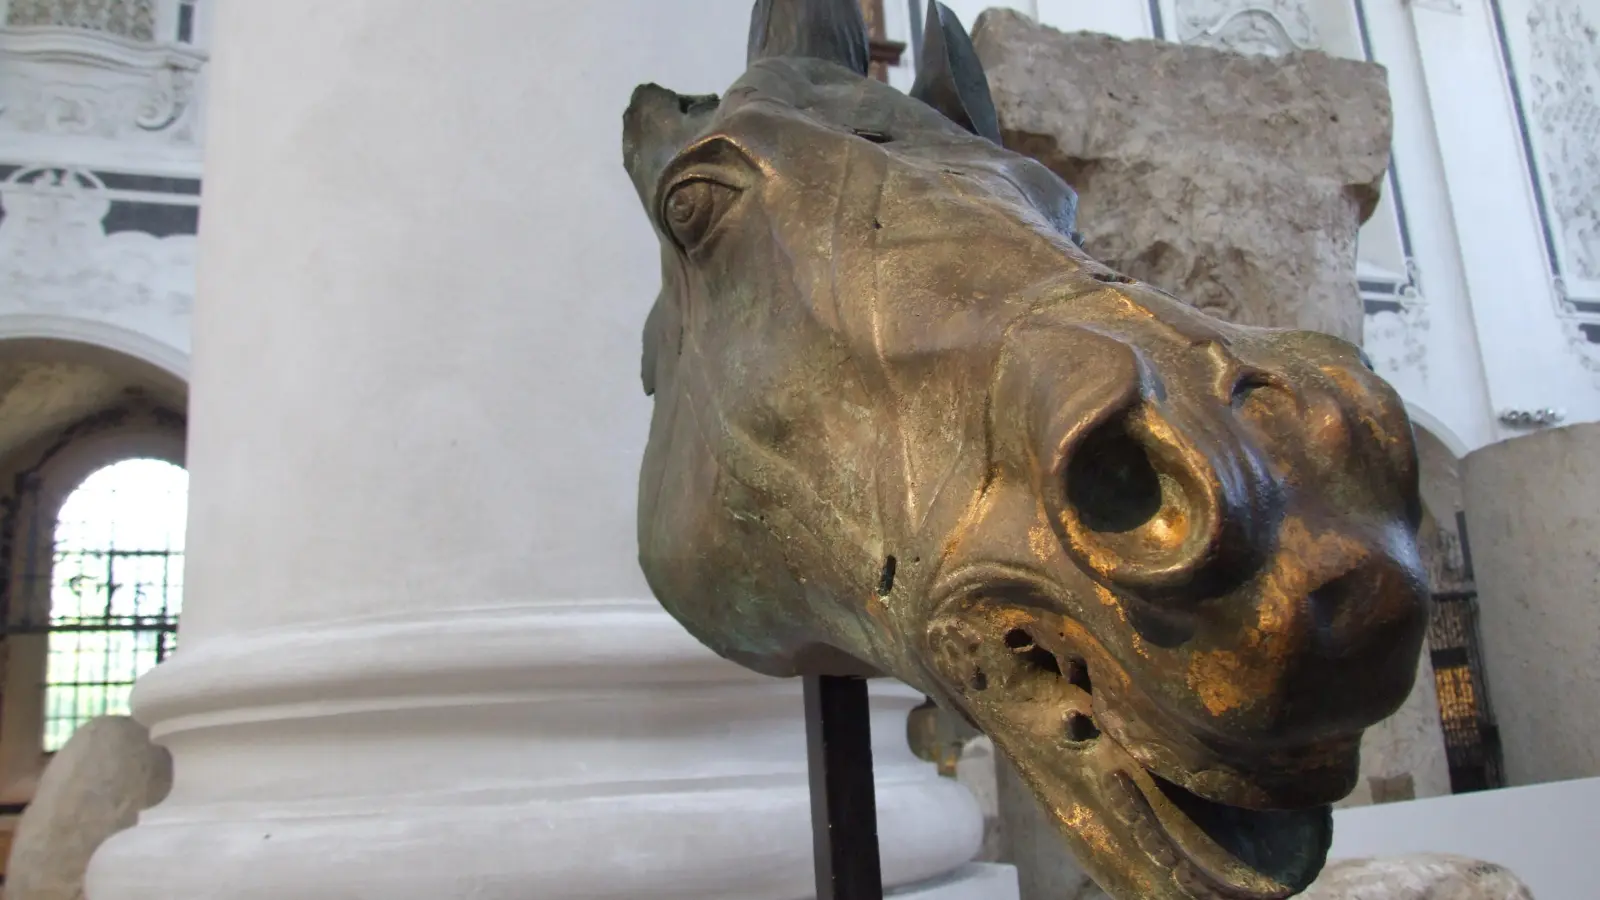 Augsburg hätte prächtige Stücke aus der Römerzeit zu zeigen, wie diesen Pferdekopf. Allerdings fehlt ein geeigneter Ausstellungsraum, denn die Dominikanerkirche (Bild), die bis 2012 als römisches Museum diente, ist aus statischen Gründen geschlossen.  (Foto: Christine Ketzer)